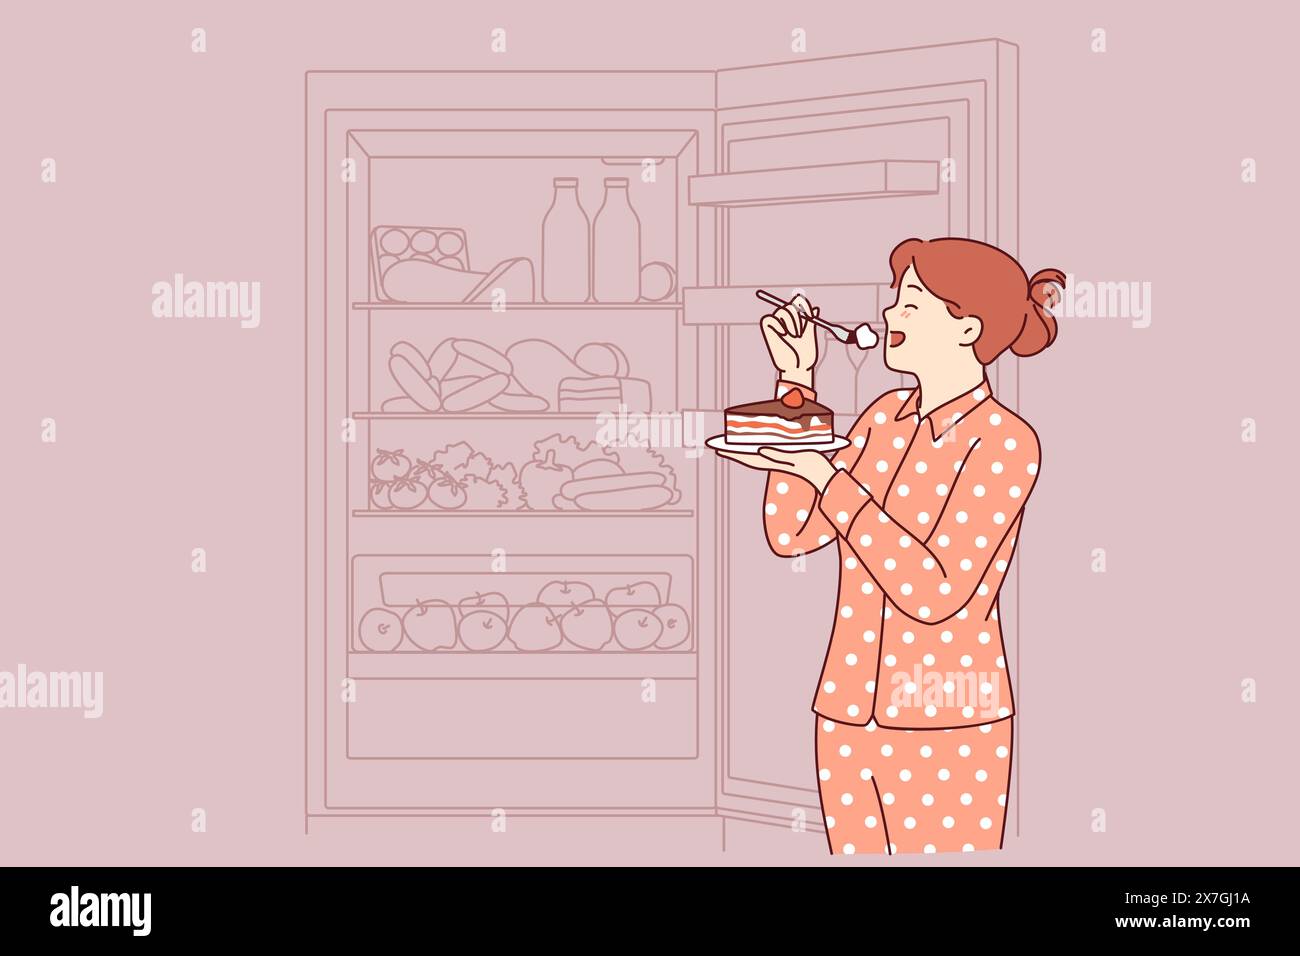 Die Frau isst nachts Kuchen, steht im Schlafanzug in der Nähe des offenen Kühlschranks und riskiert, übergewichtig zu werden. Konzept des Essens von Cholesterinkuchen wegen mangelnder Bereitschaft, Diät zu folgen, die Diabetes verursacht Stock Vektor